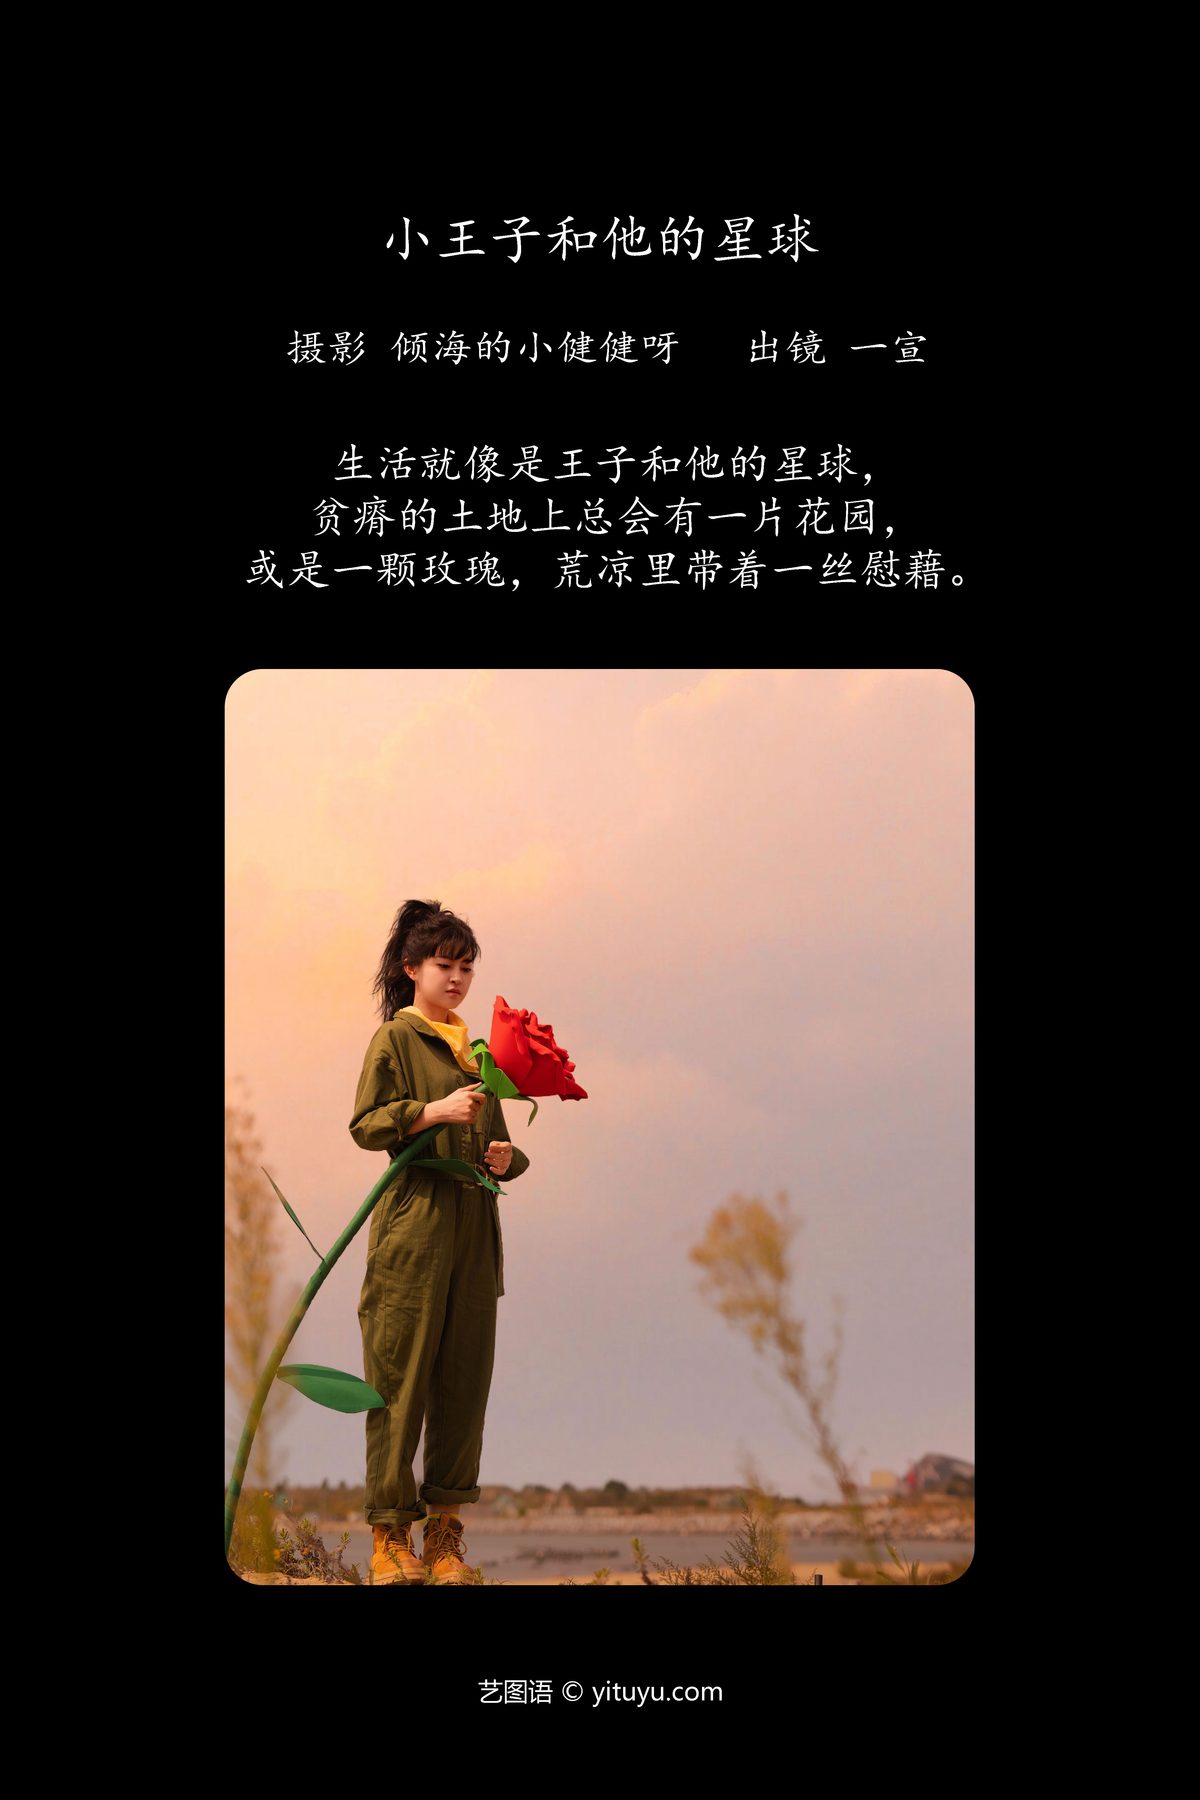 YiTuYu艺图语 Vol 5731 Yi Xuan 0001 5485209618.jpg